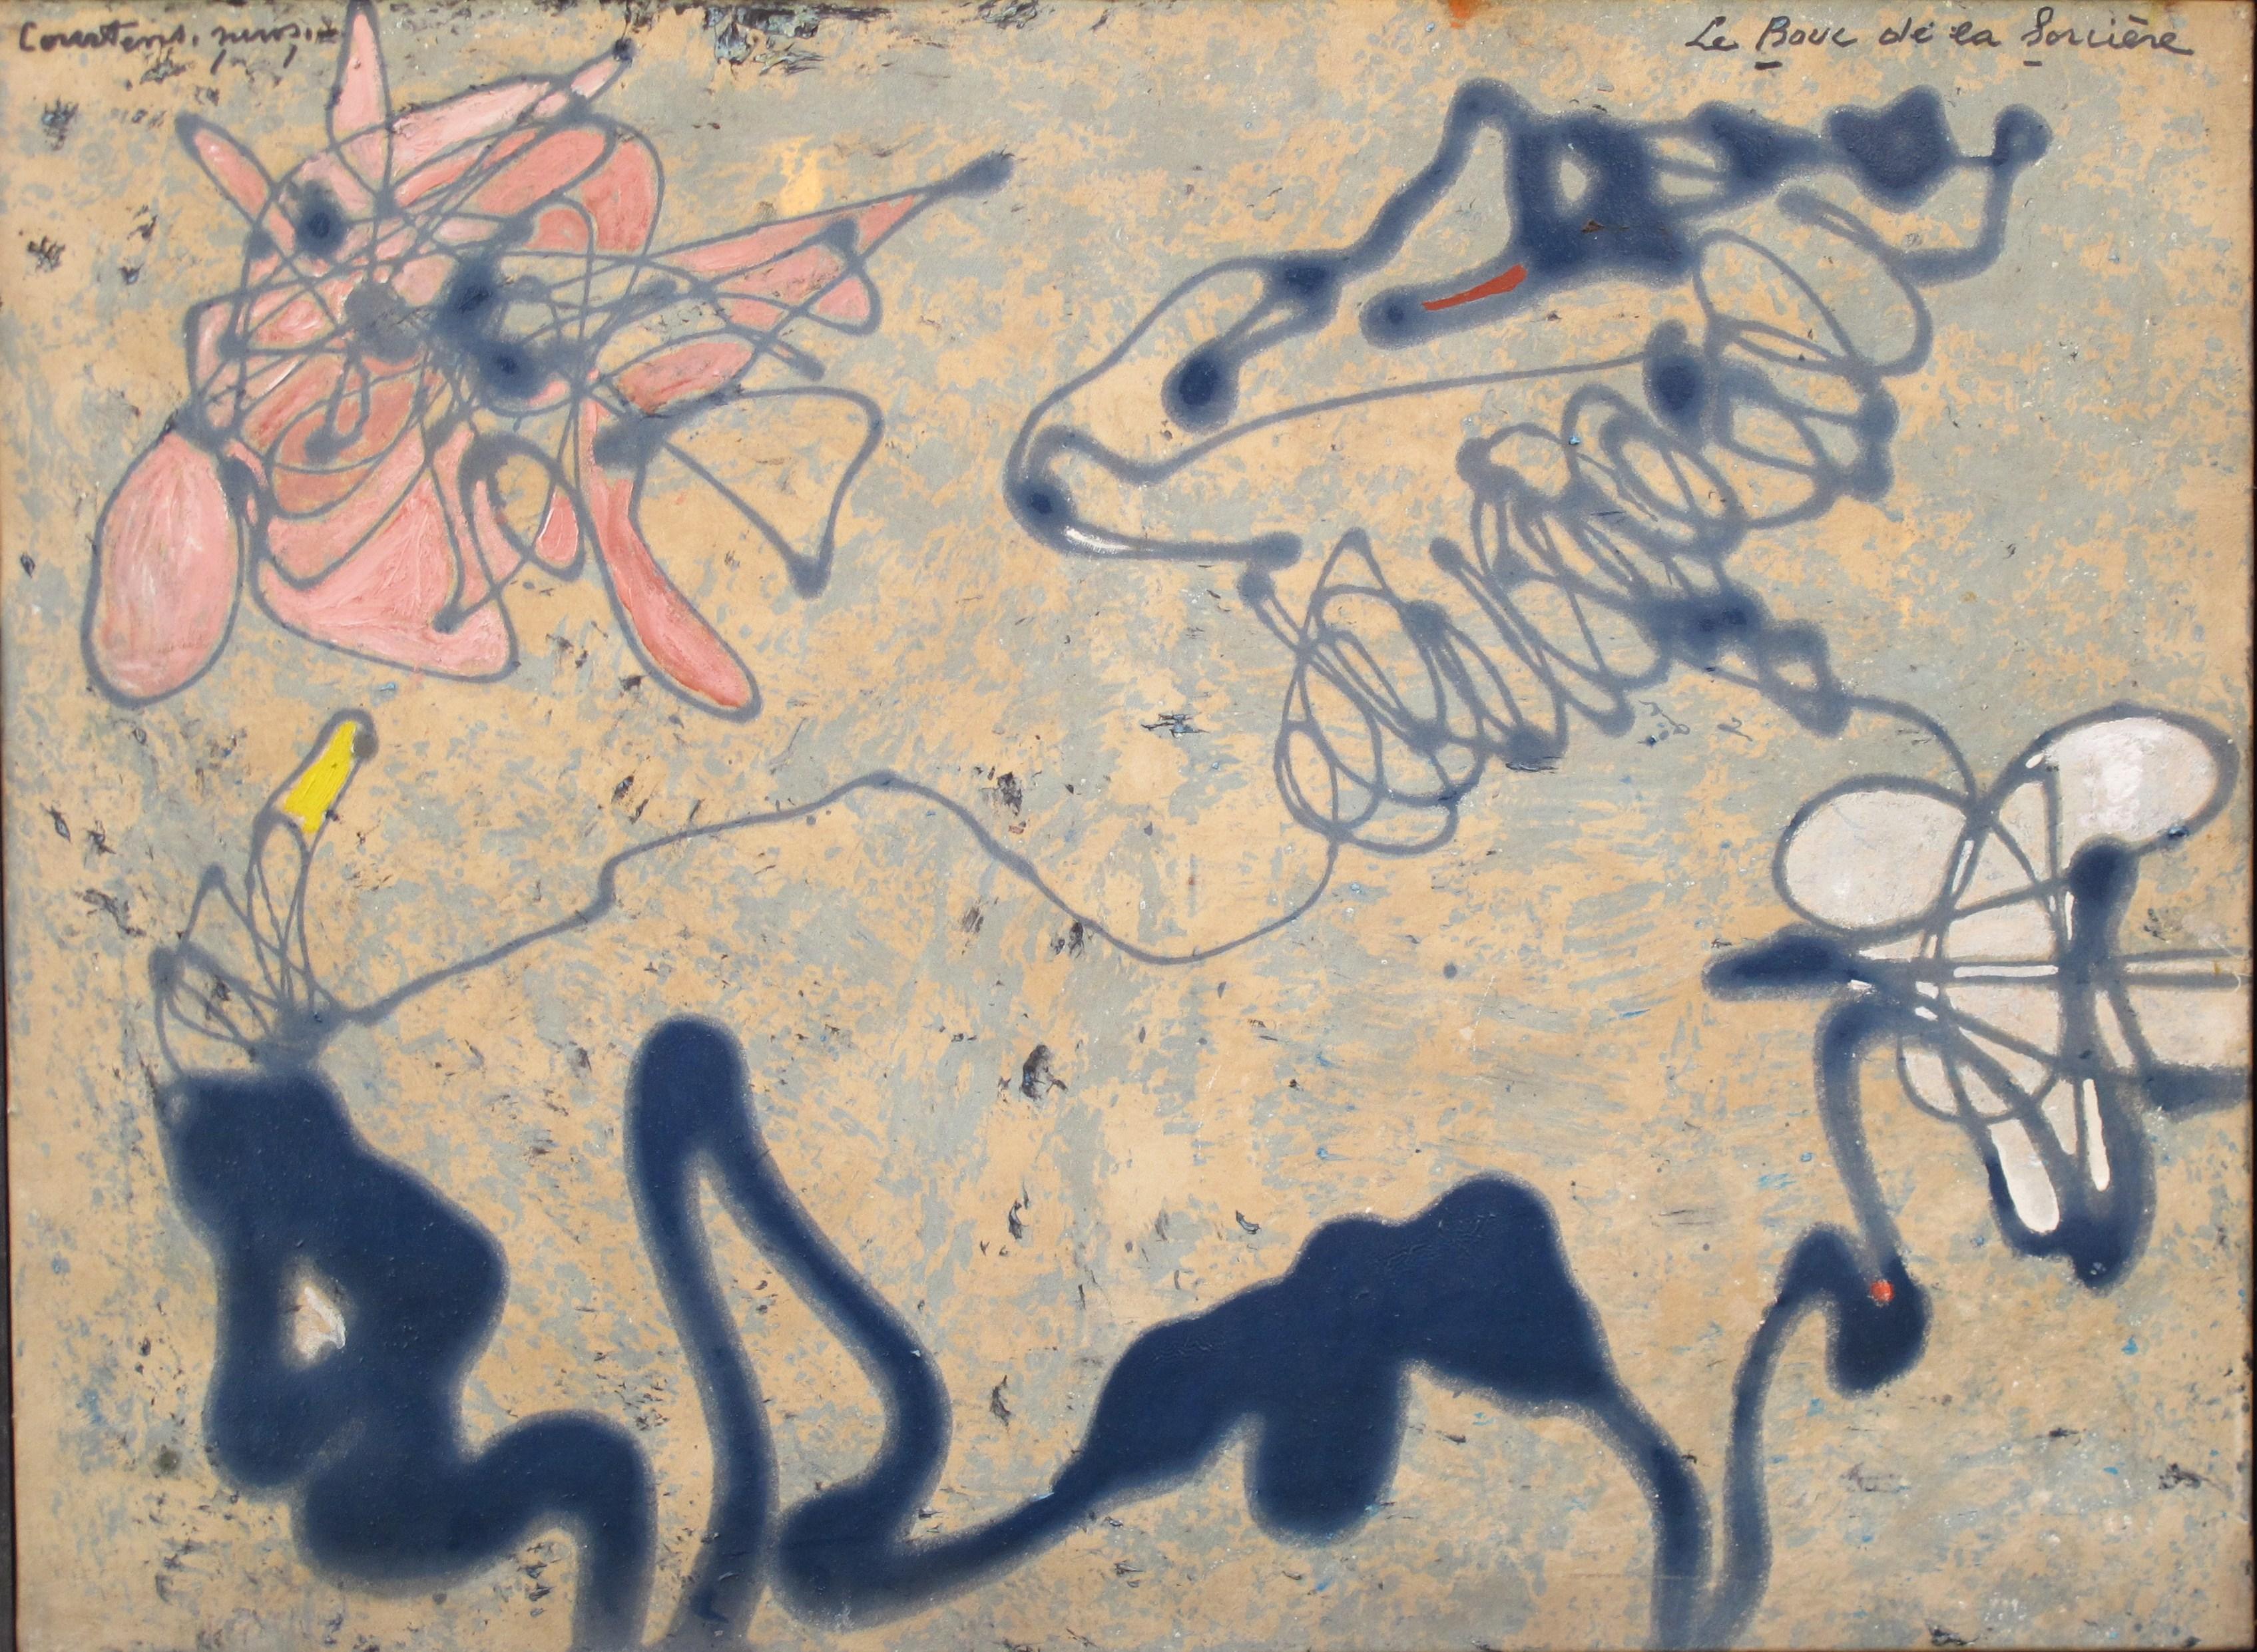 Oil on canvas
Titled and signed
A sketch on the back

Pierre COURTENS (1921-2004)
Ce bruxellois d’une famille d’artistes se forme à l’Académie des Beaux-Arts de St Josse-Ten-Noode en 1942 auprès du peintre Jacques Naes.
Ses nombreux voyages en